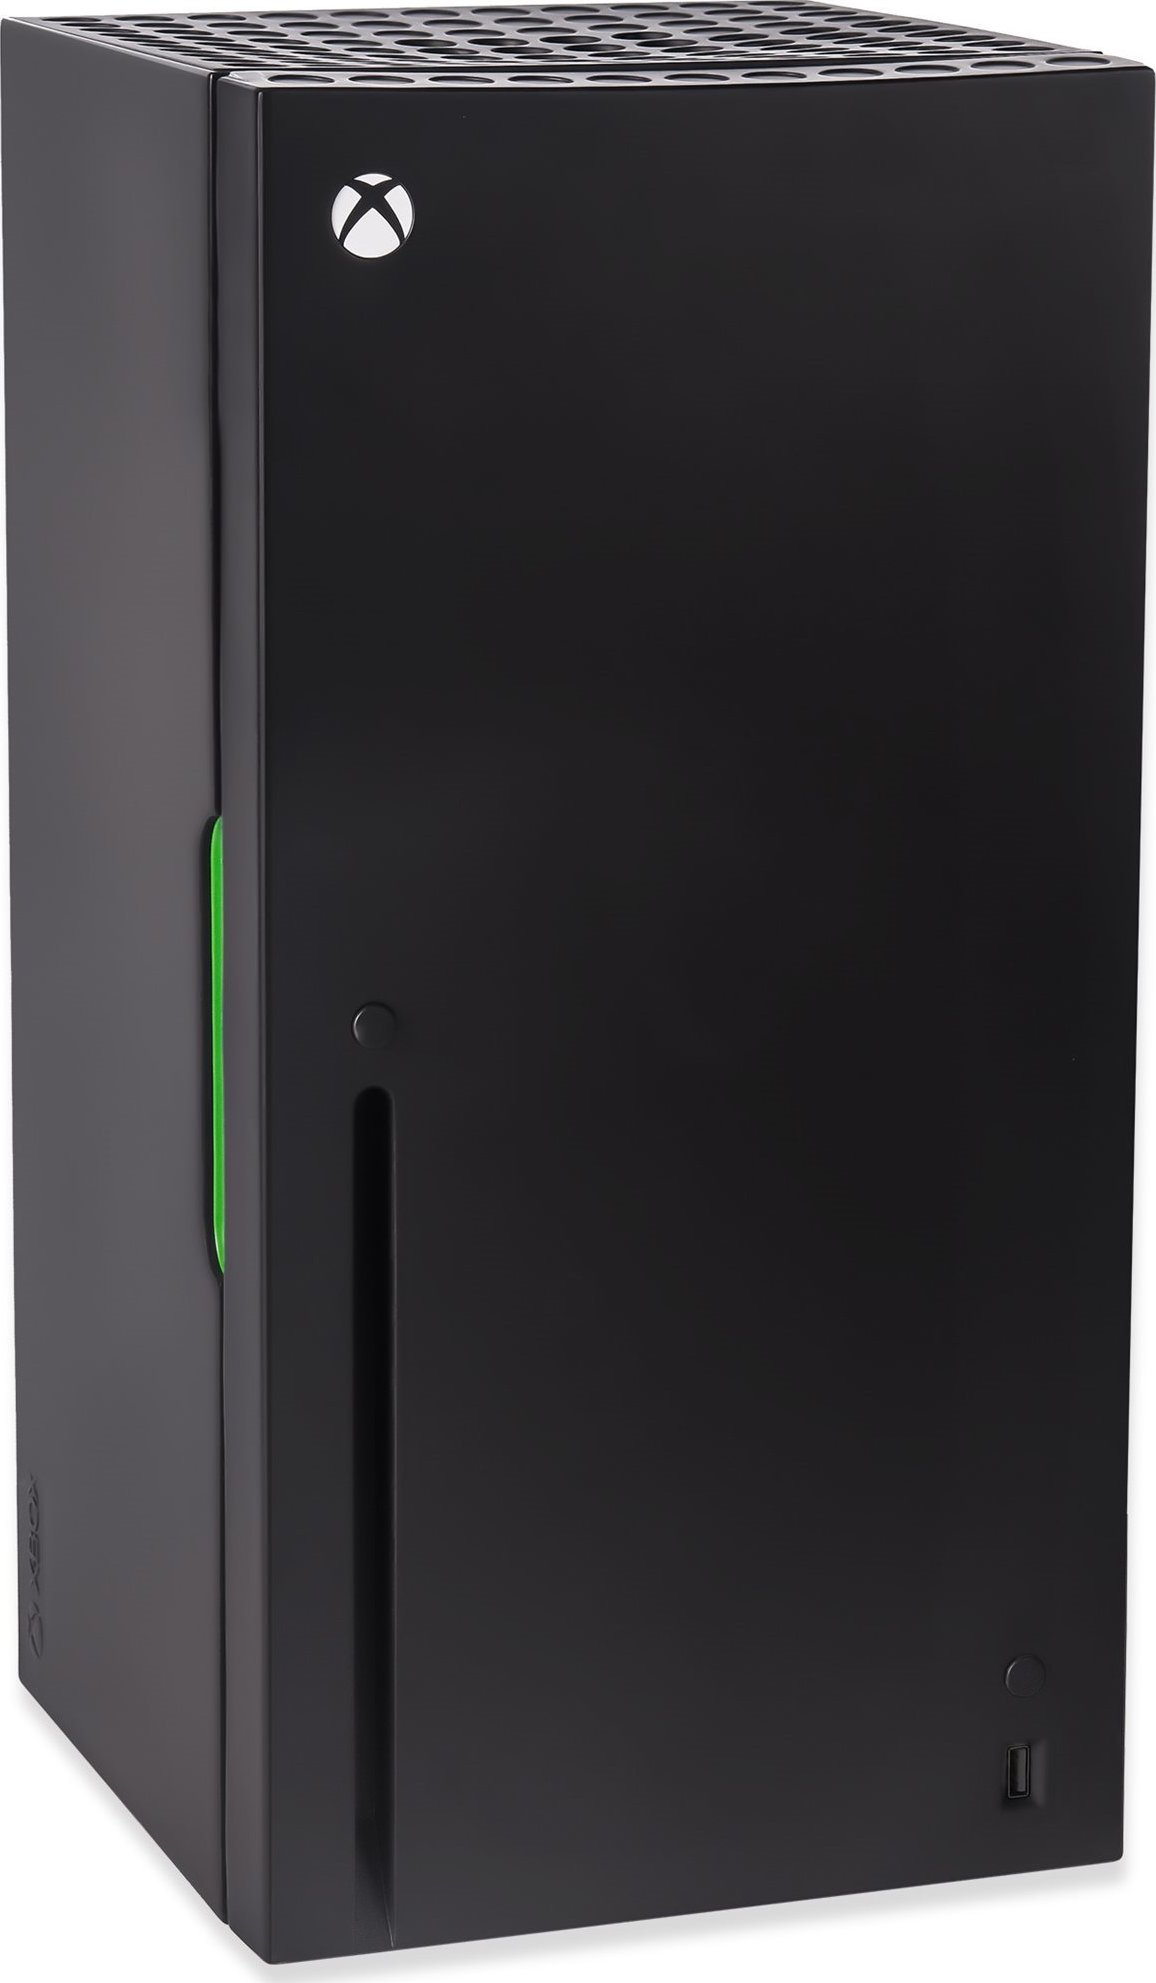 Xbox Mini Fridge [recenze]: Úžasná lednice pro hráče? 